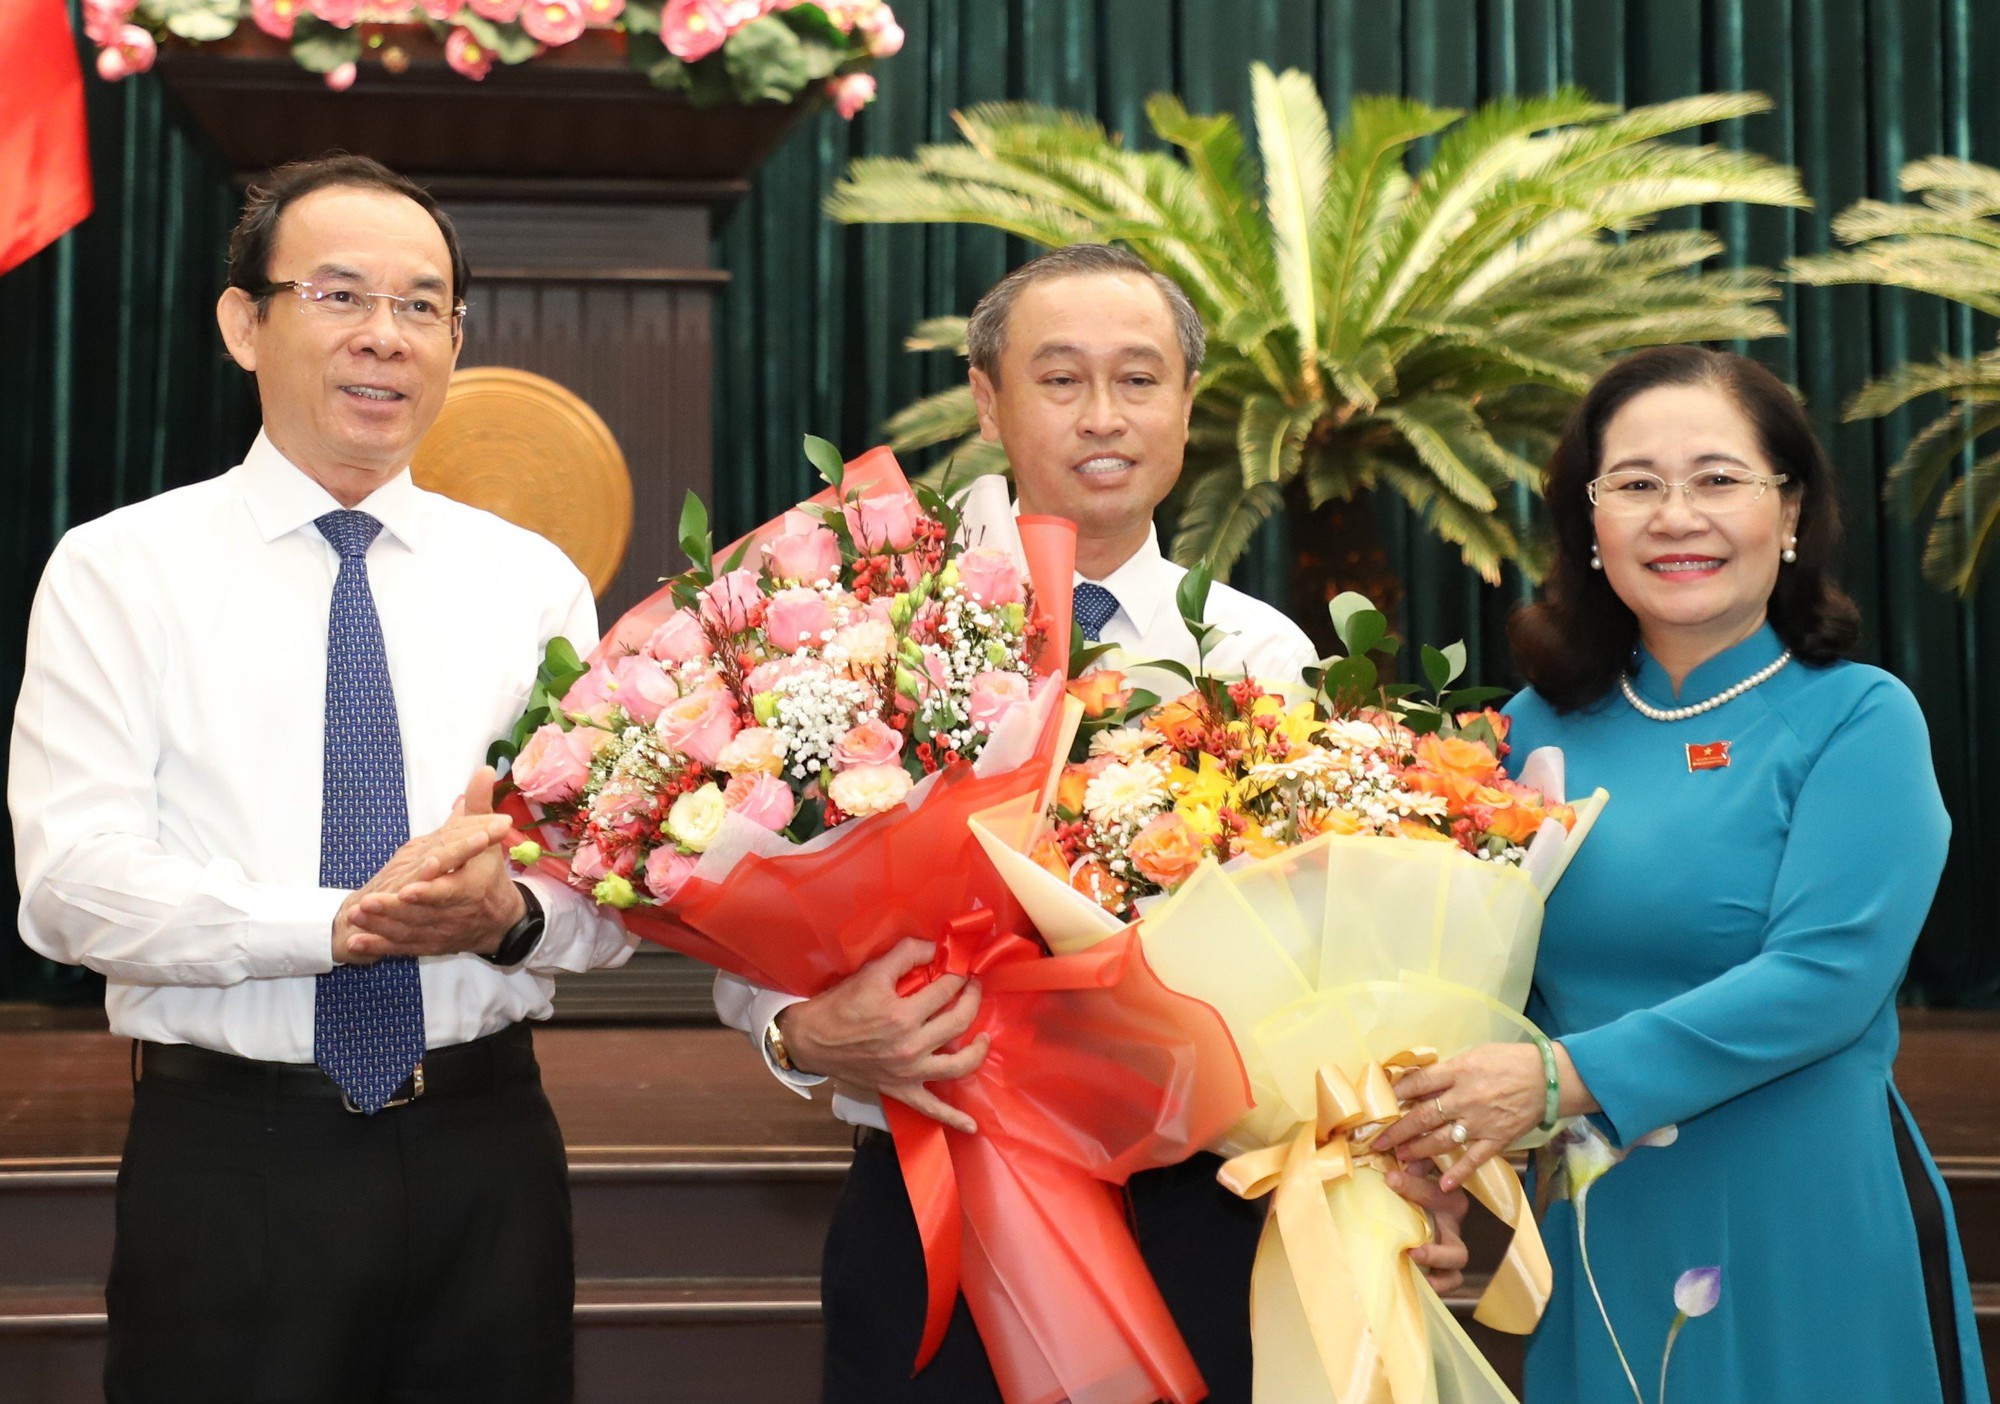 Giám đốc Sở được bầu làm Phó Chủ tịch HĐND, bà Phạm Khánh Phong Lan nhận thêm trọng trách mới- Ảnh 1.